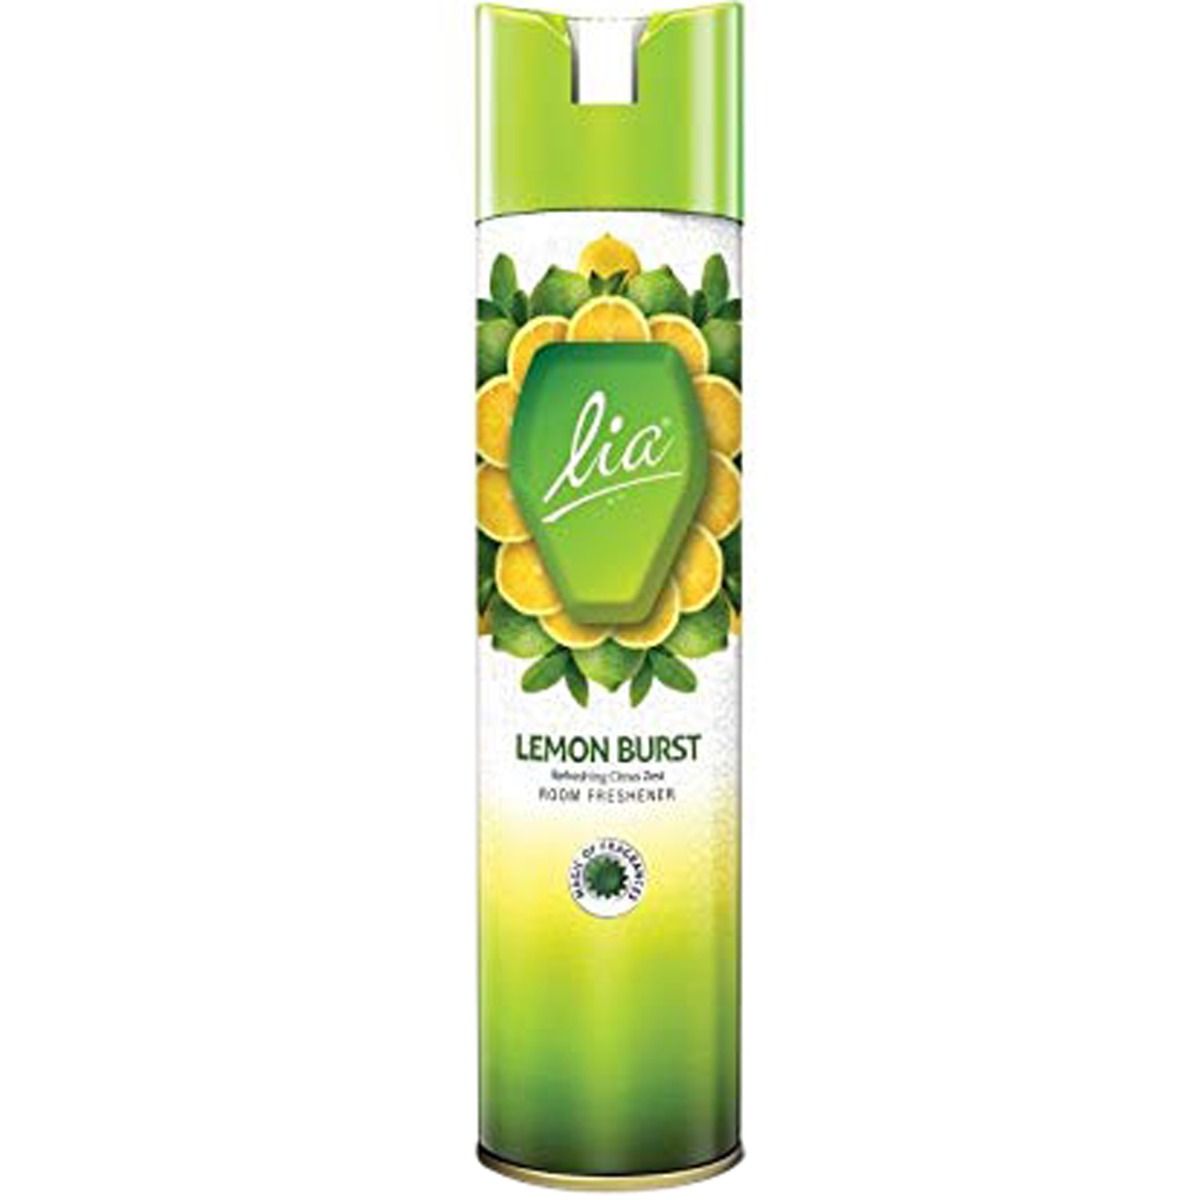 Buy Lia Lemon Burst Room Freshener, 140 gm Online